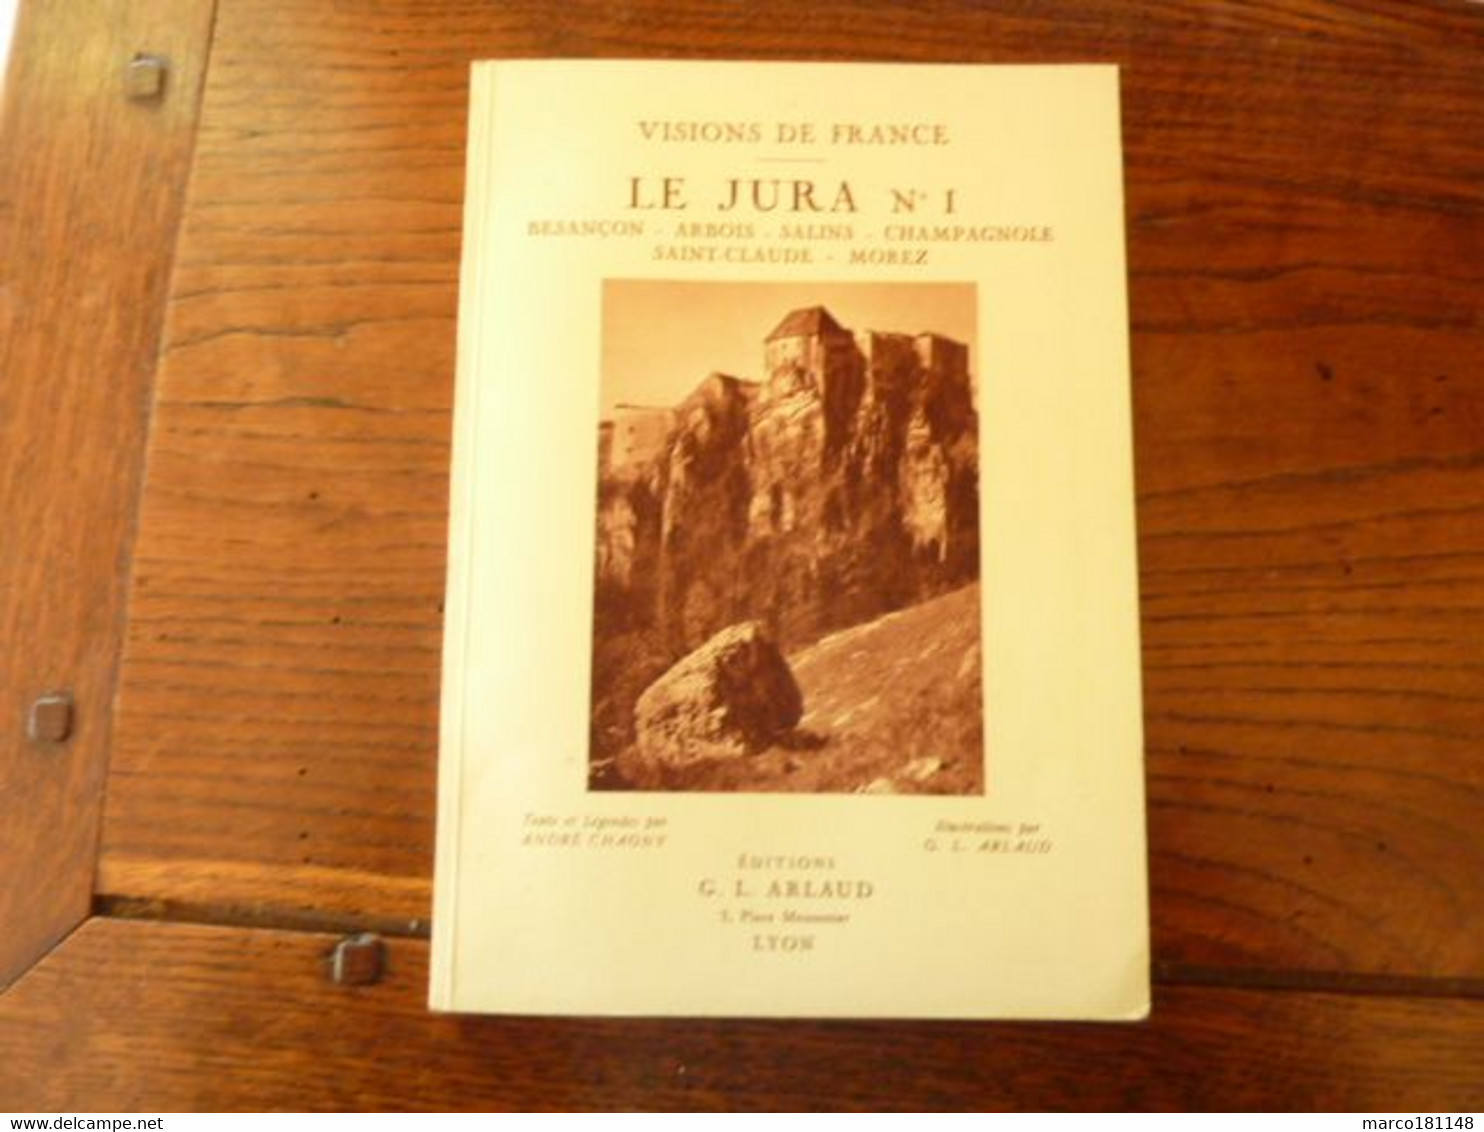 LE JURA, Besançon, Arbois, Salins, Champagnole, St Claude, Morez - Visions De France - Ed G.L. ARLAUD - 1932 - - Franche-Comté